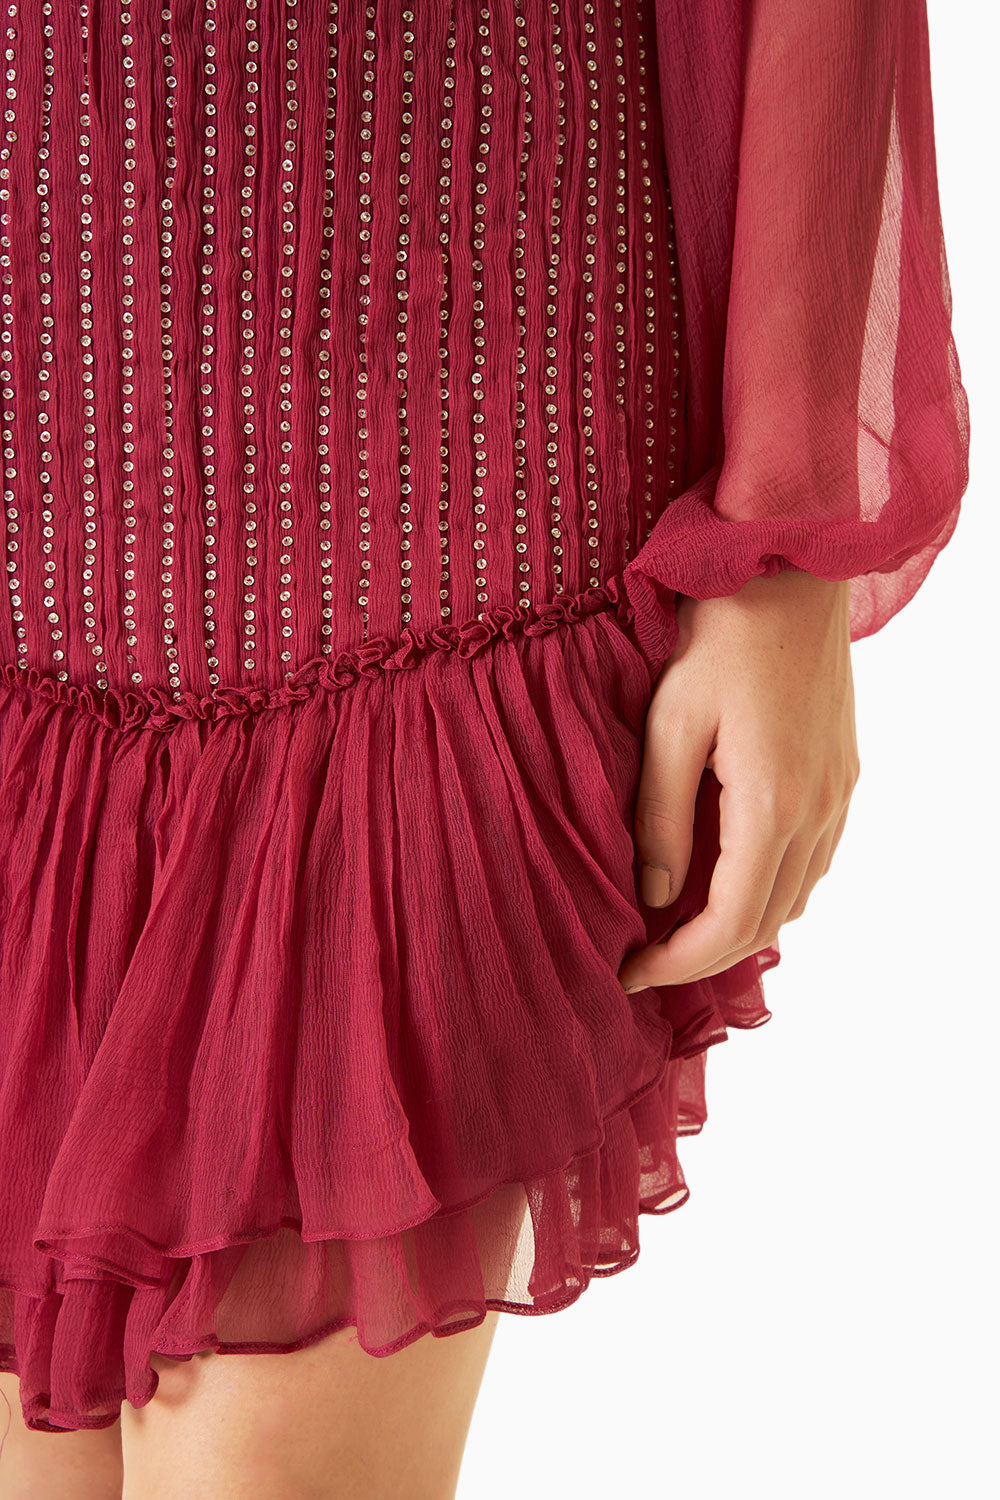 Pink Chiffon HIgh-Neck Studded Dress